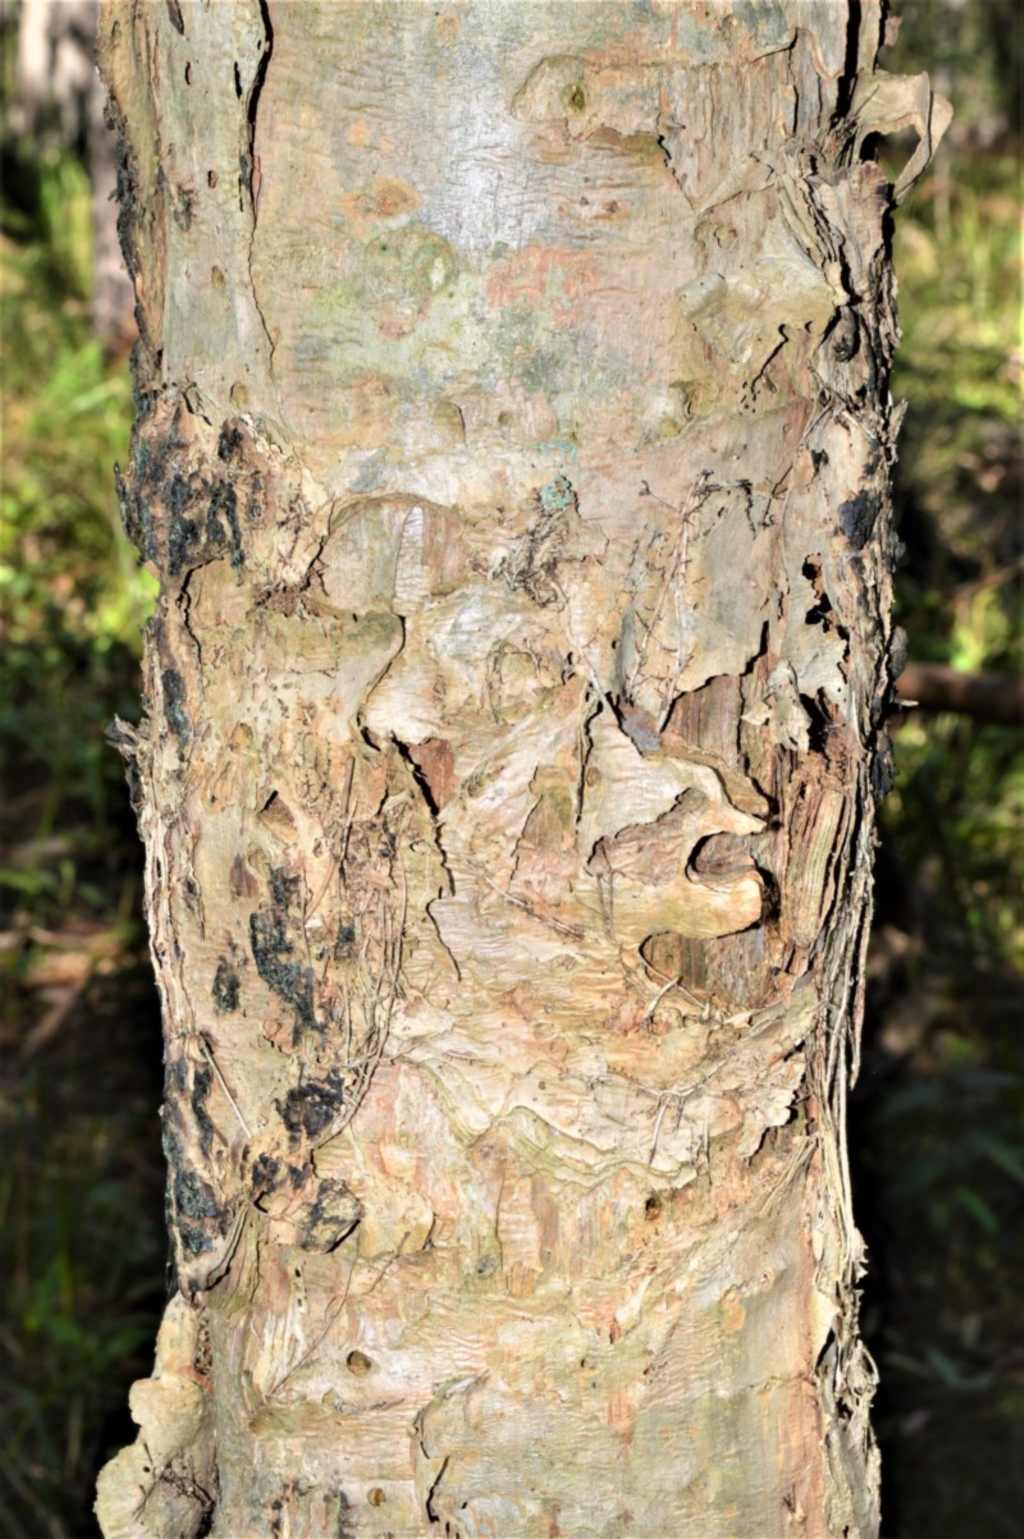 Melaleuca linariifolia at Berry, NSW - 21 Aug 2020